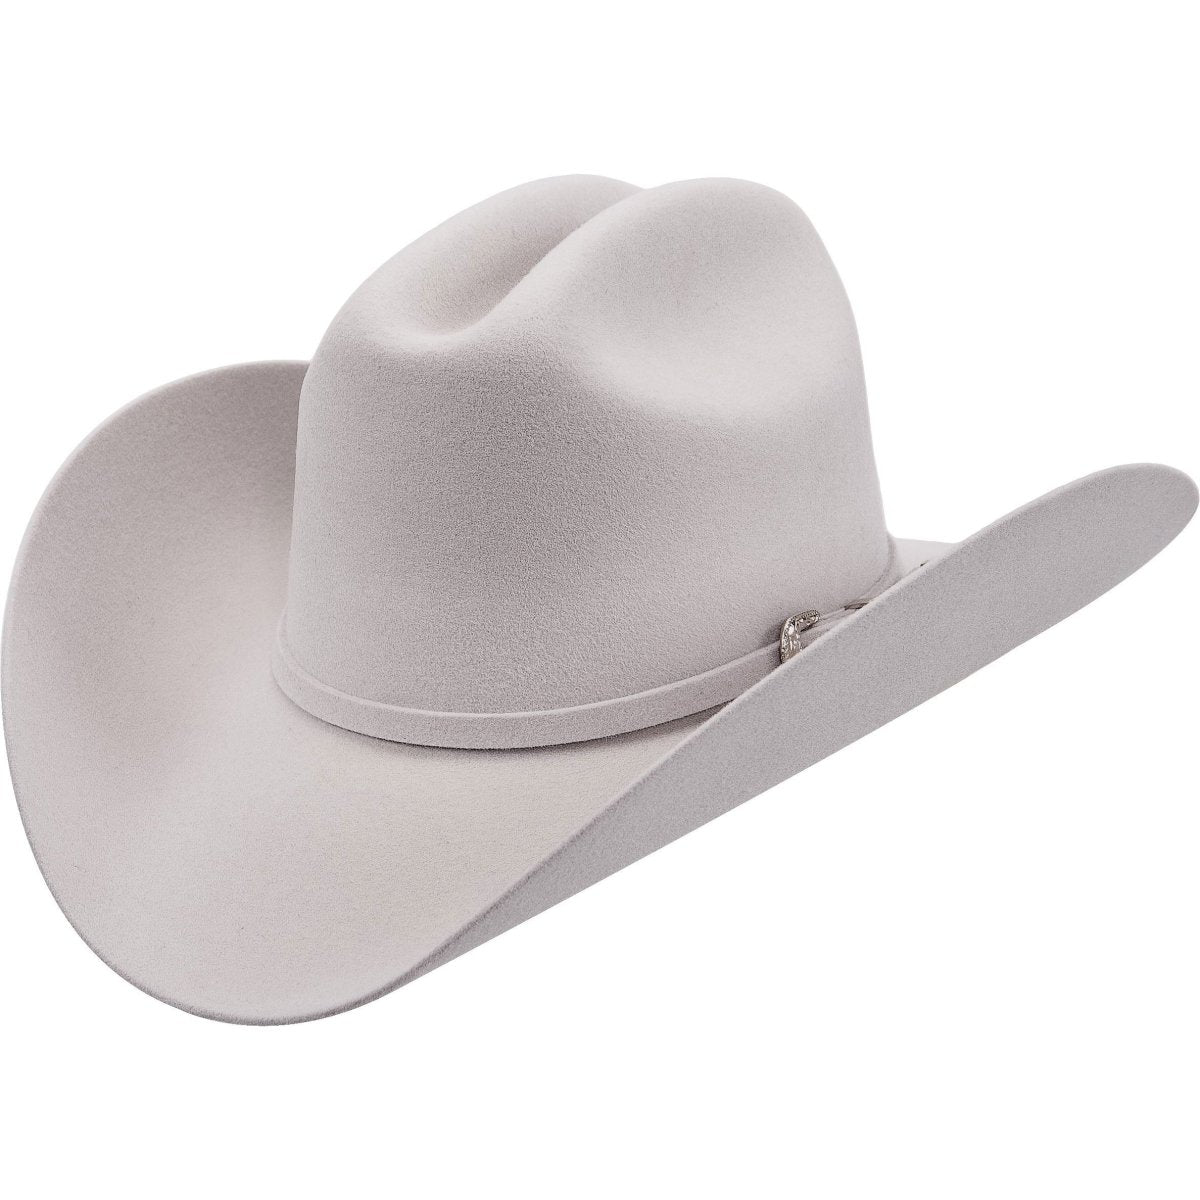 Texana o Sombrero 100X Horma Joan Color Gris CaballoBronco.com